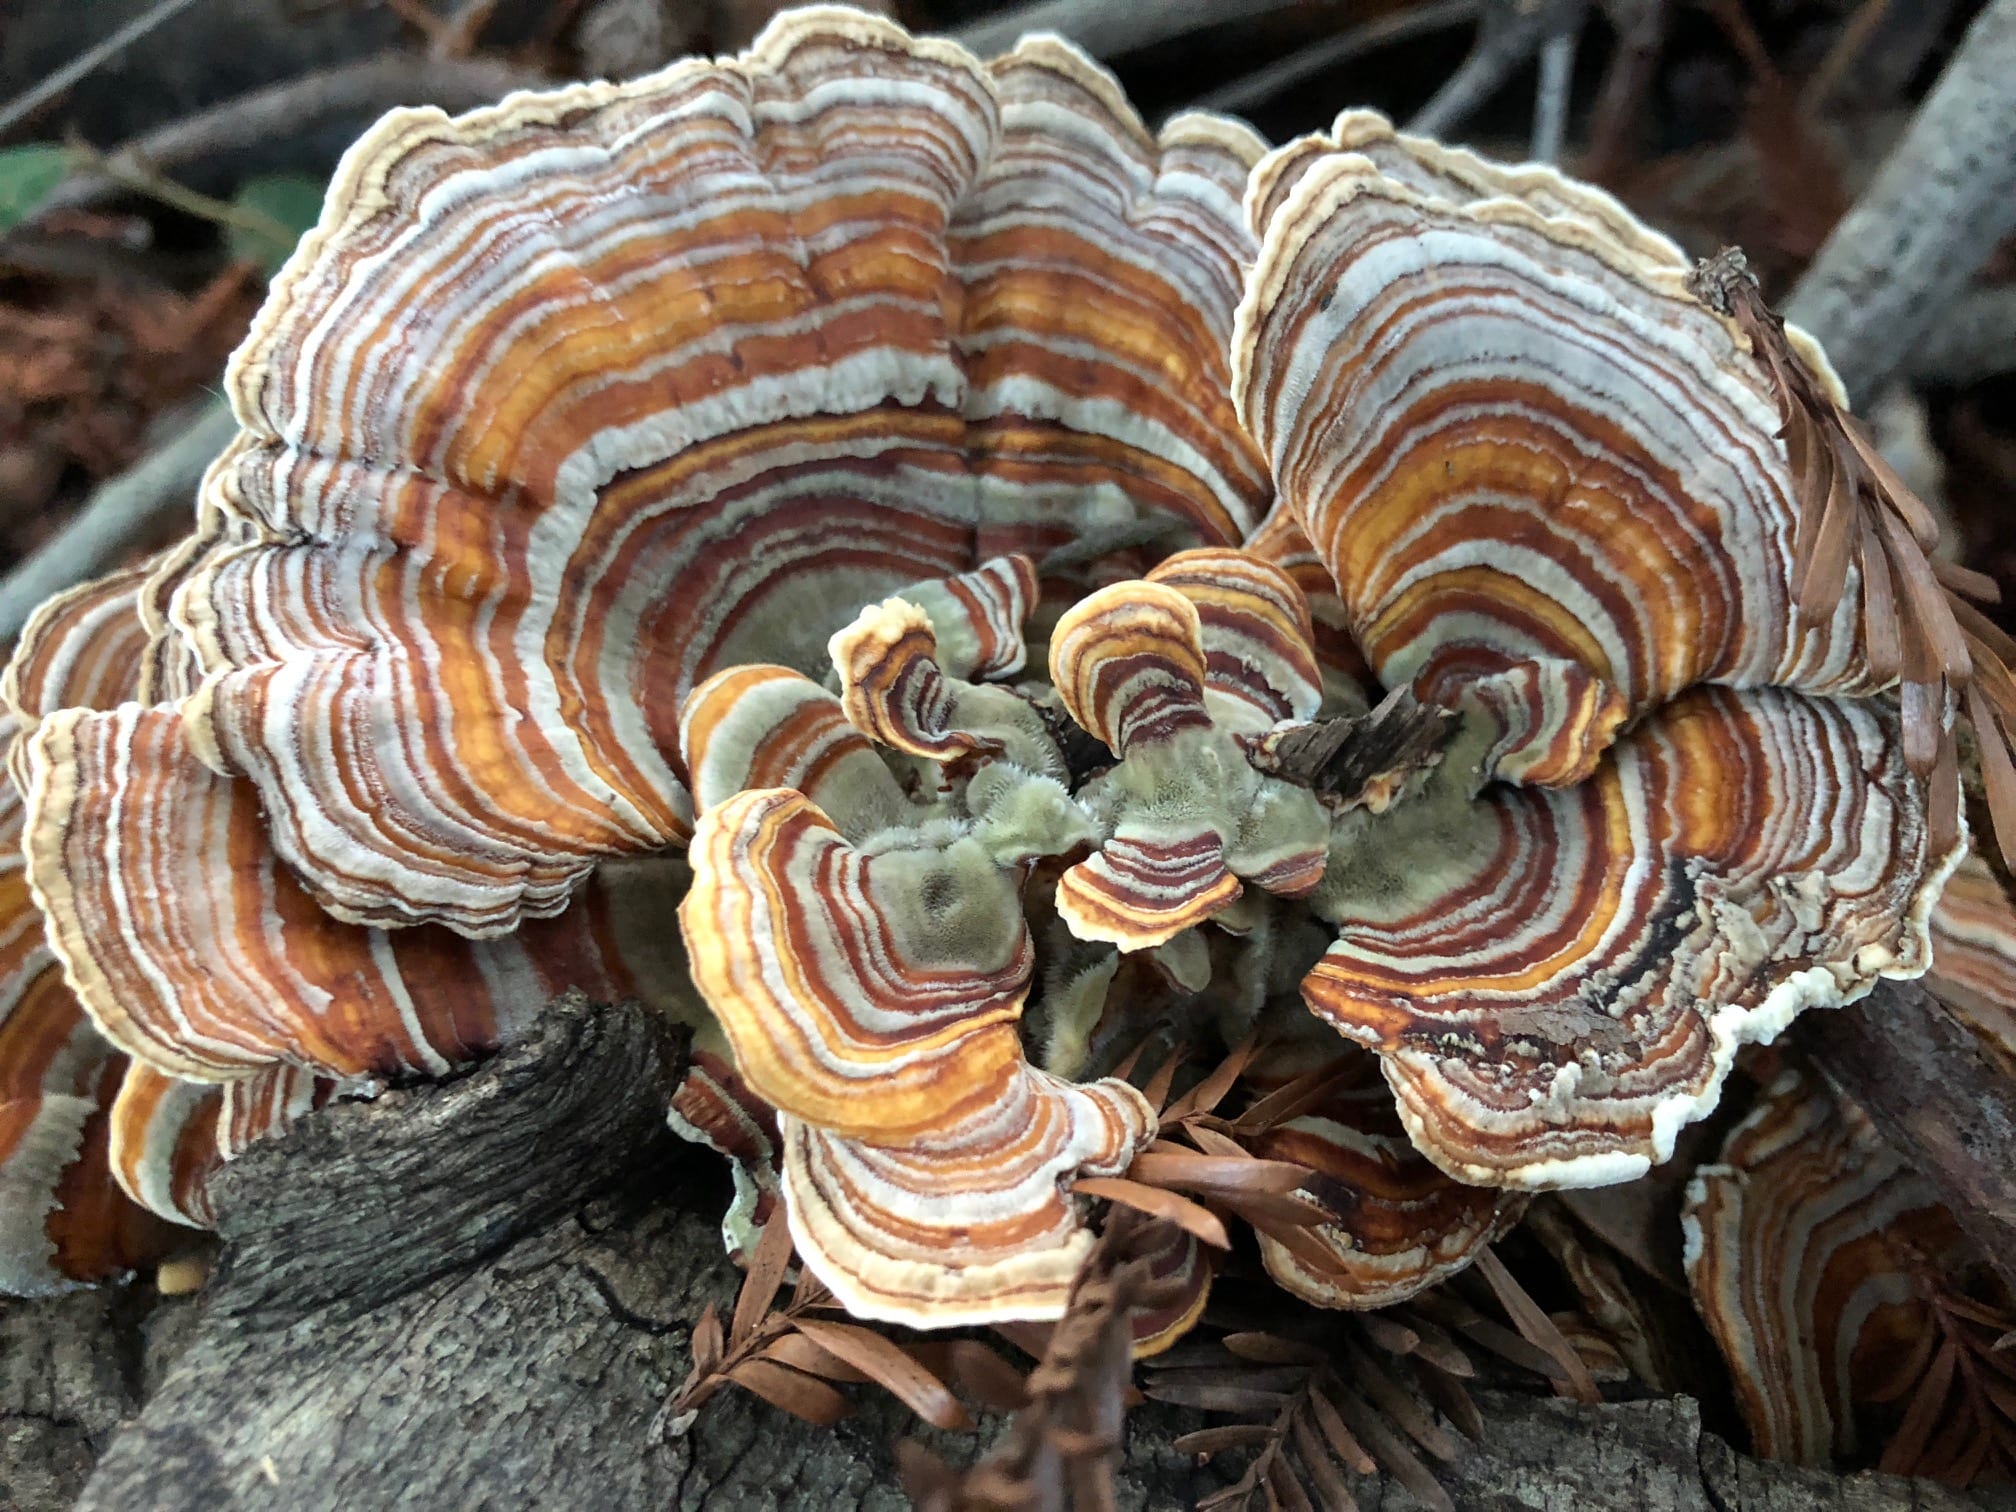 Turkey tail mushroom on Mt. Tamalpais